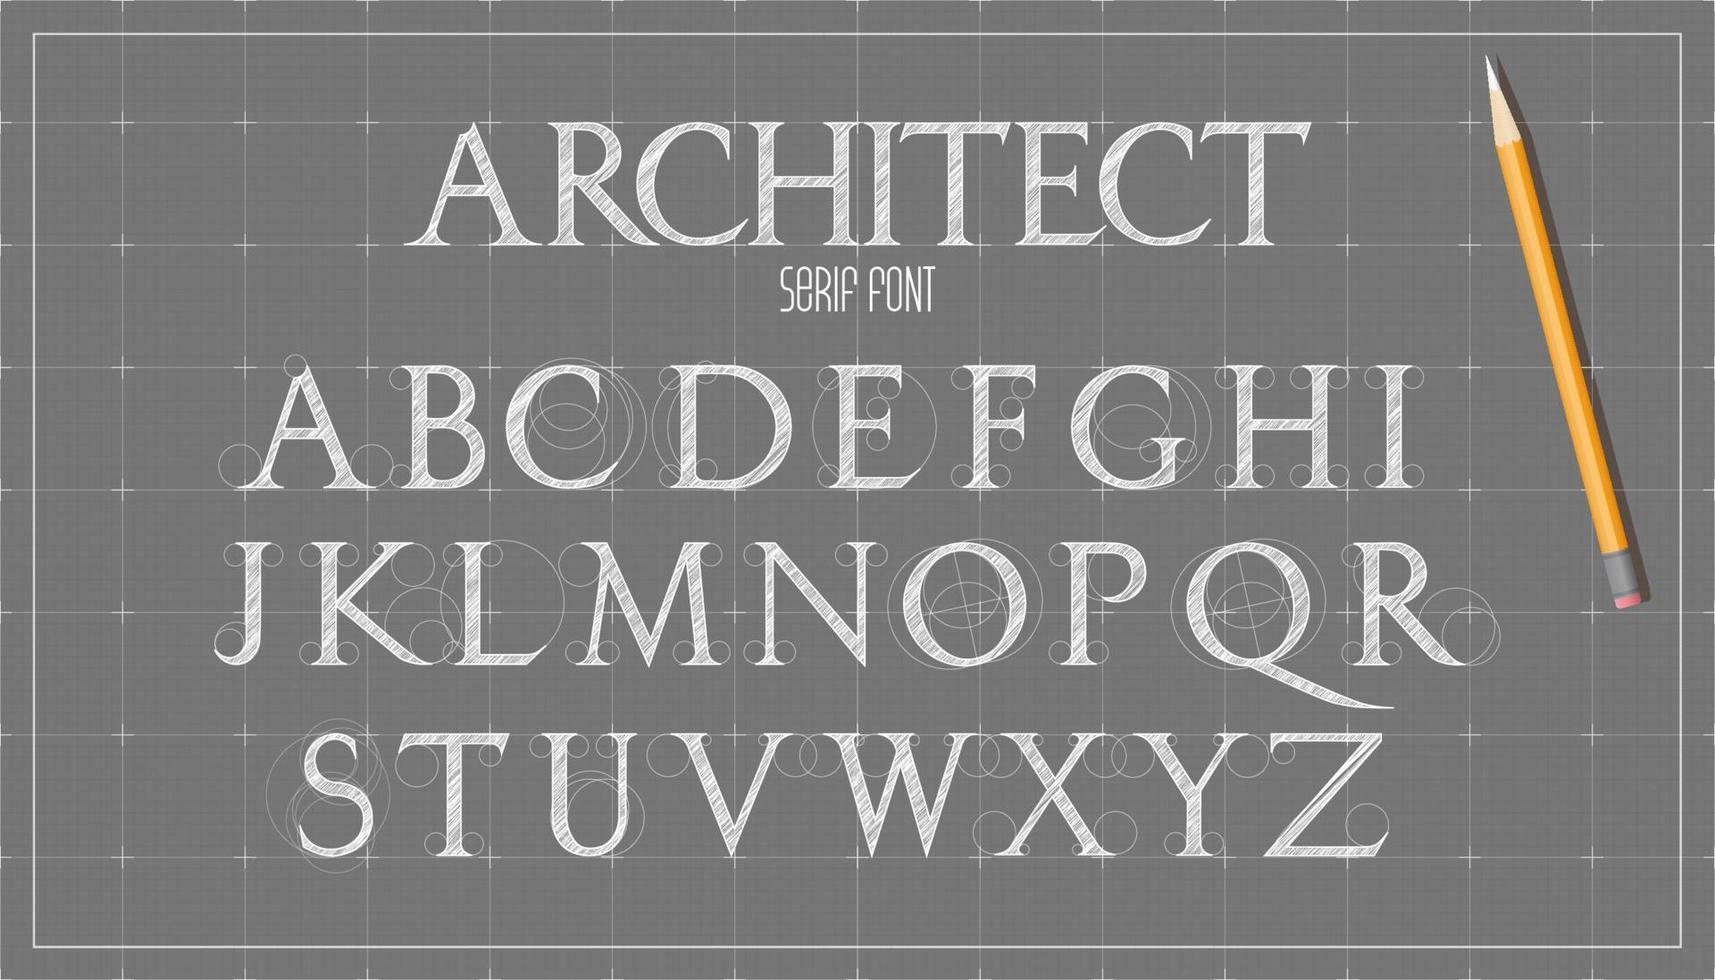 Blueprint architecture font. Capital sans serif letters alphabet. Sketch vector plan design background.